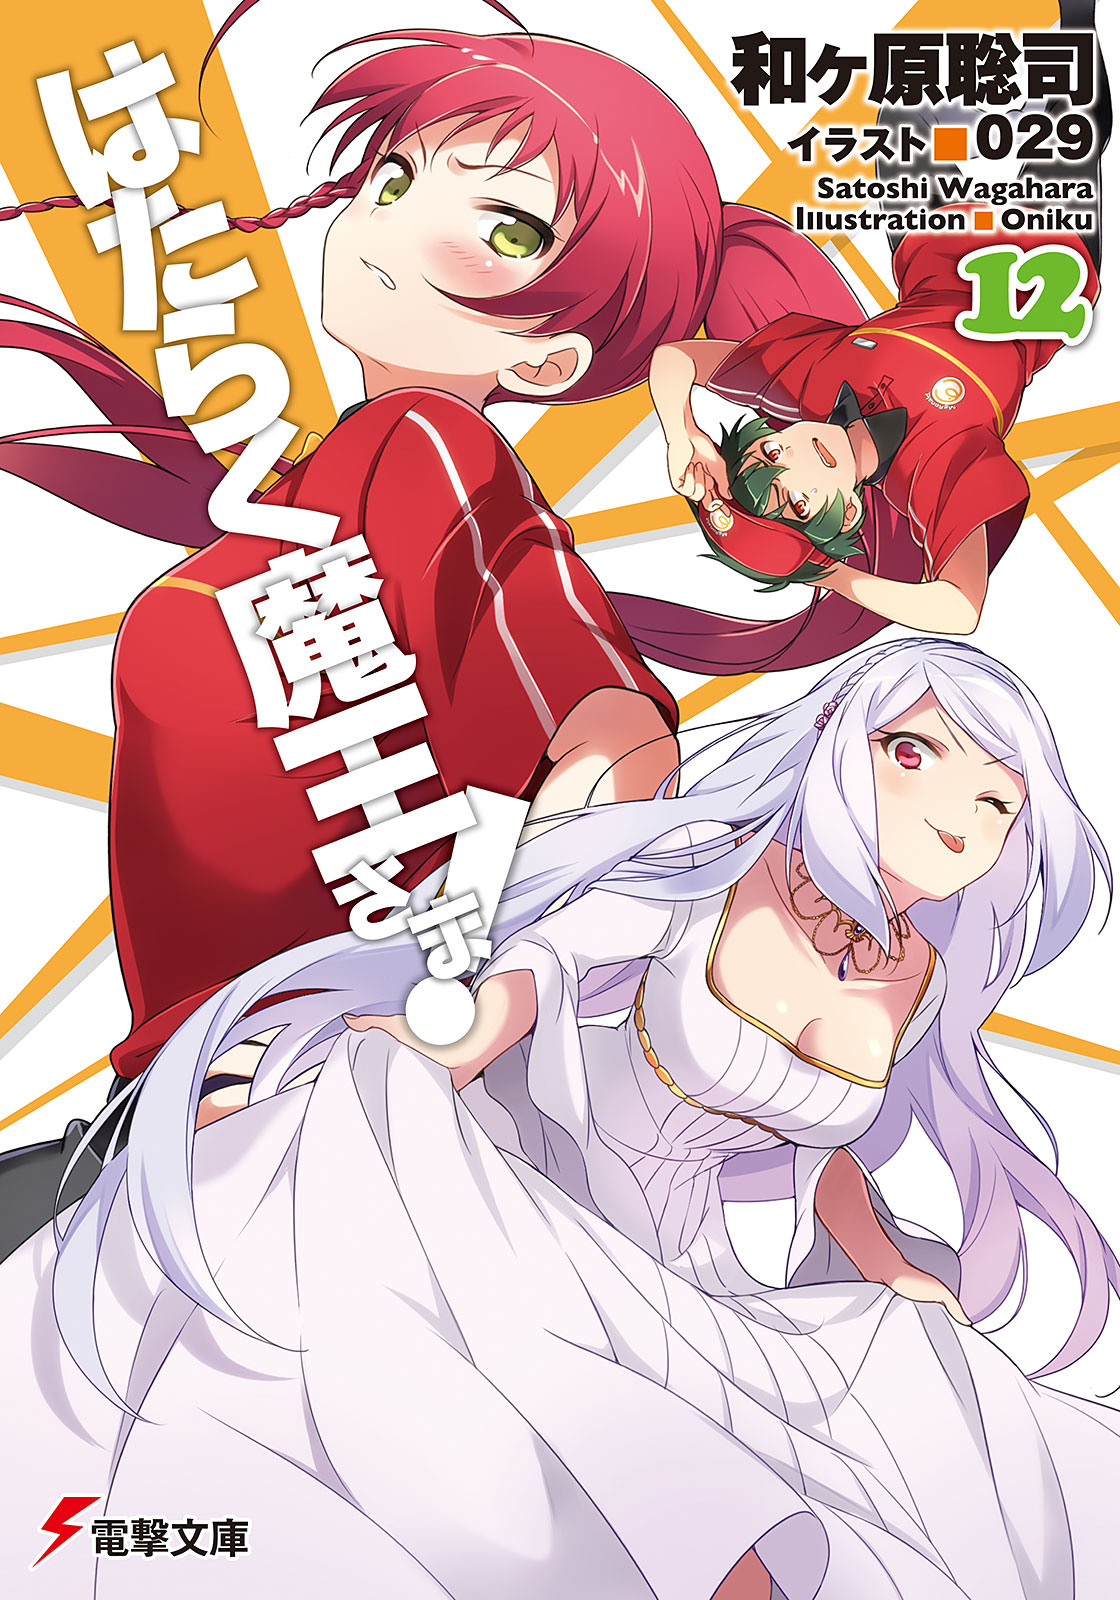 anime and manga news- Hataraku Maou-sama!